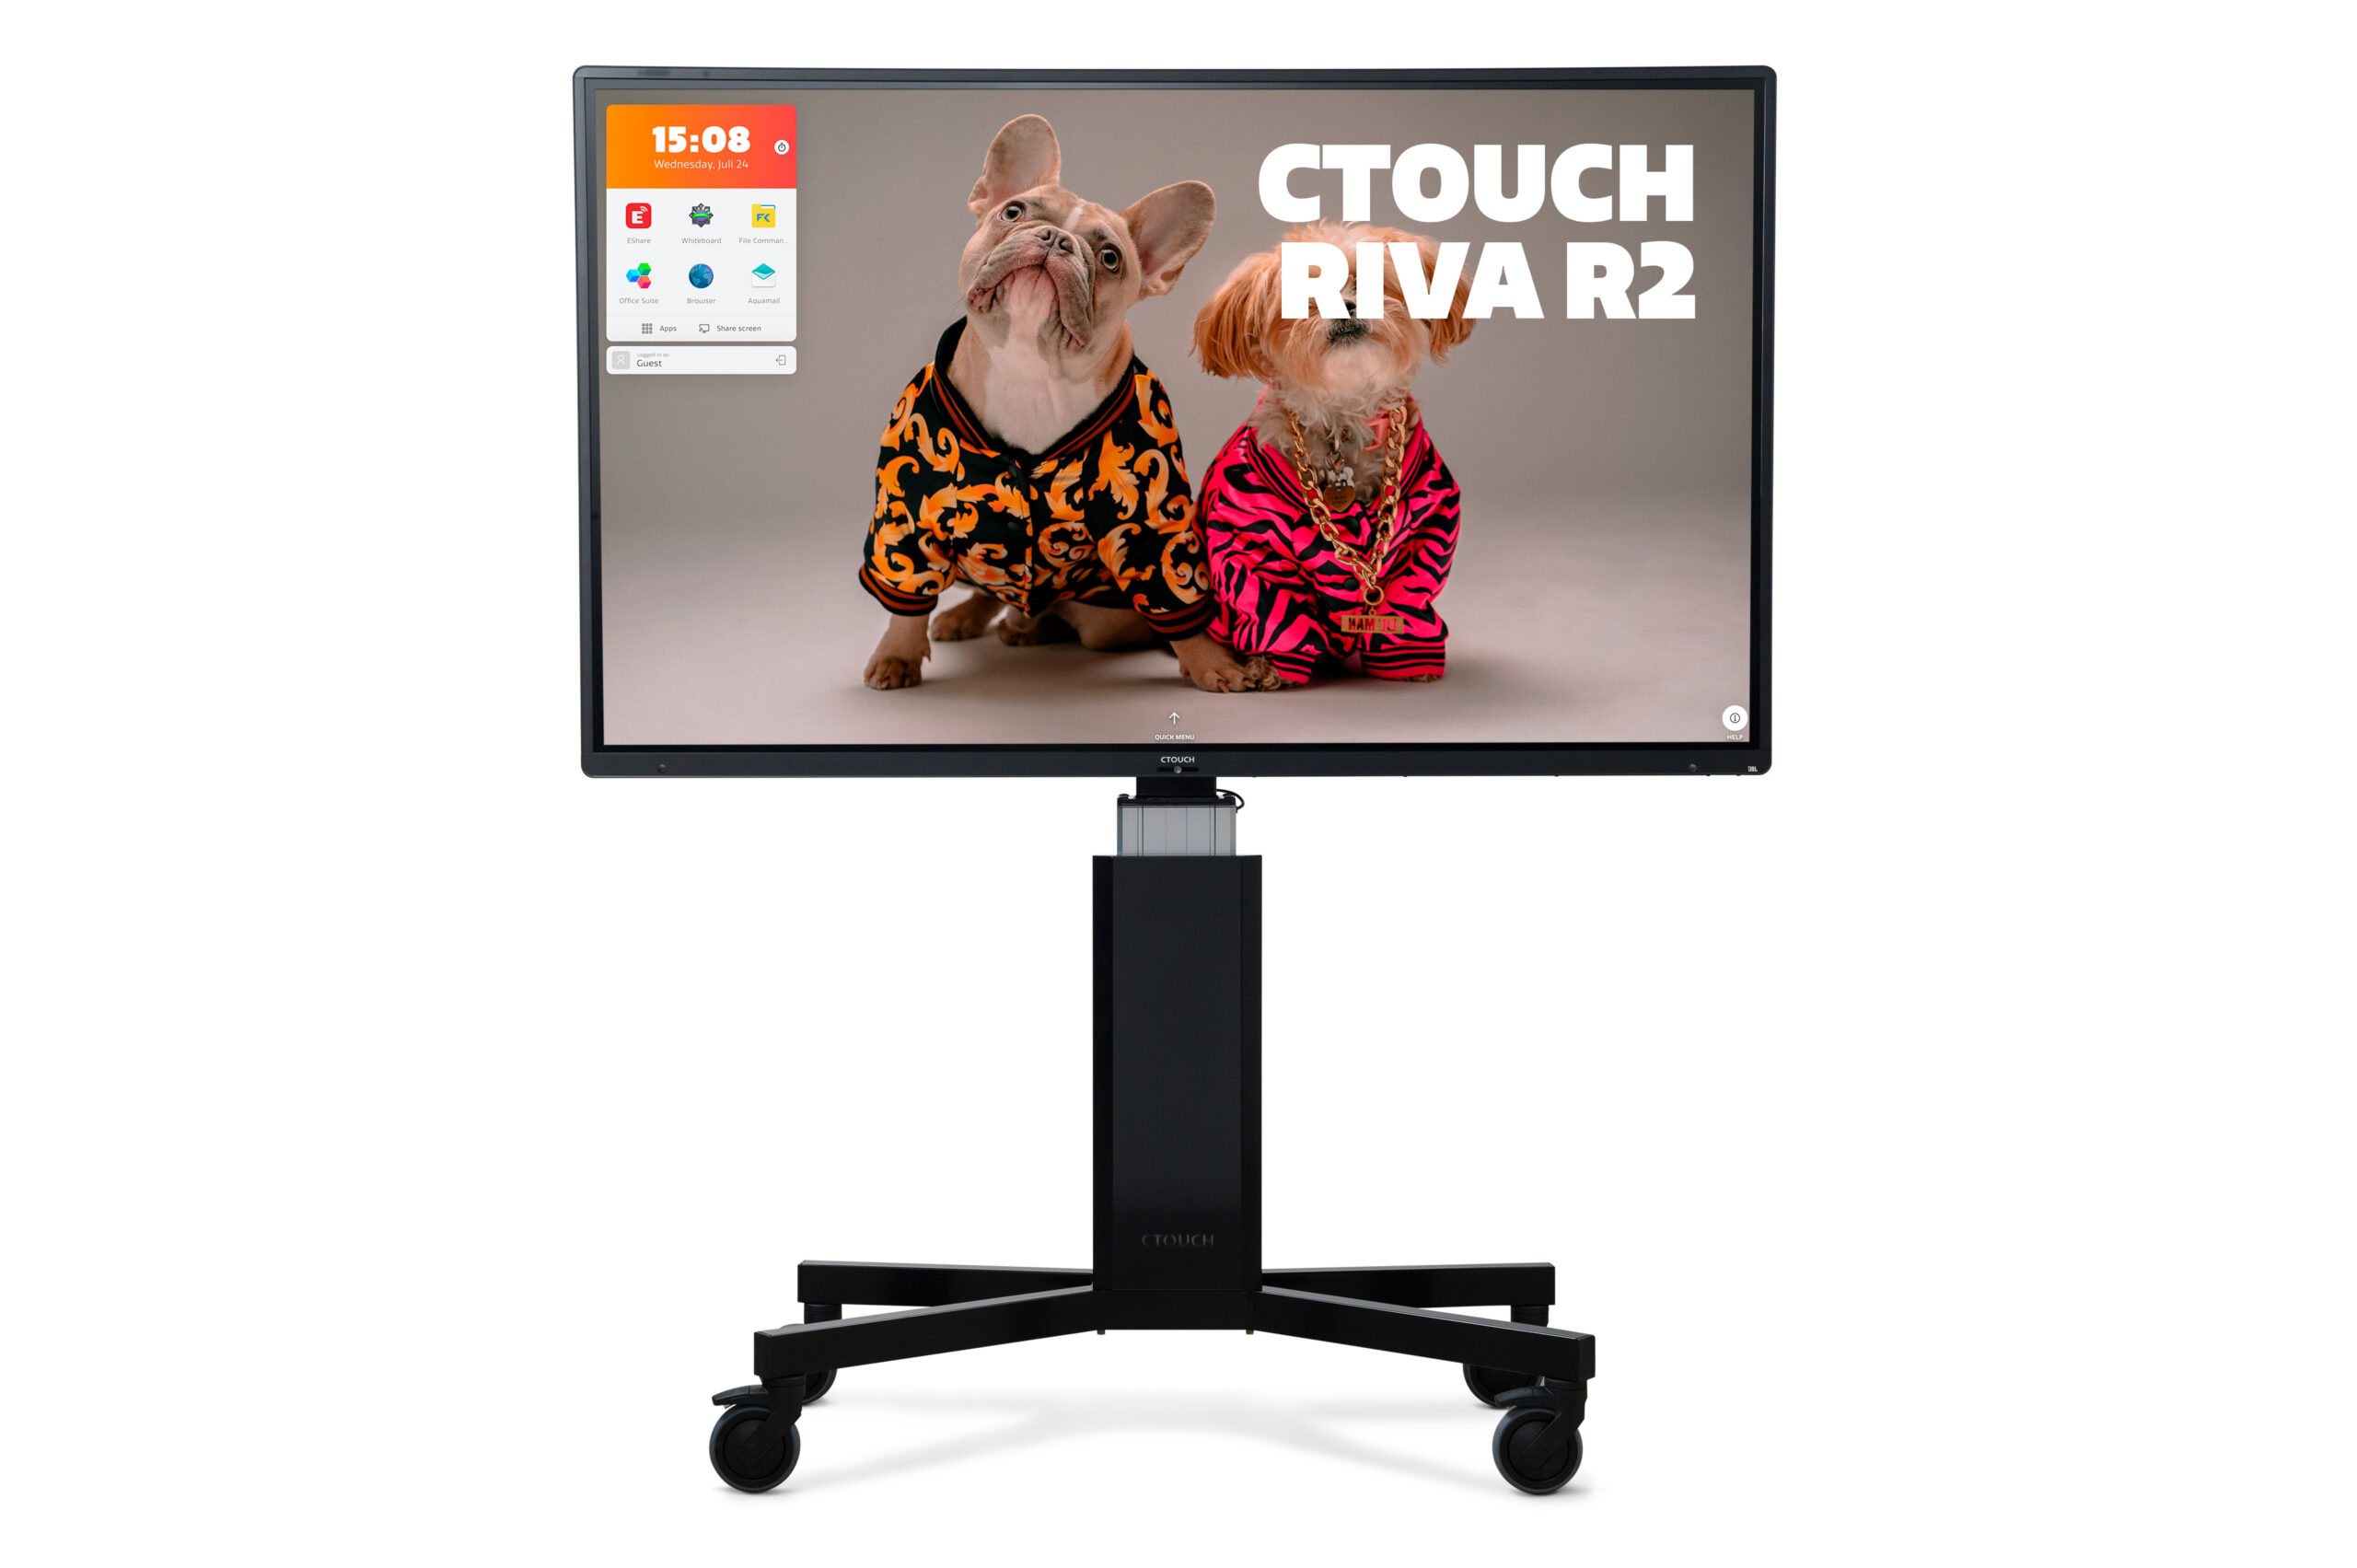 CTOUCH Riva R2 touchscreen digibord nieuw kopen belgie